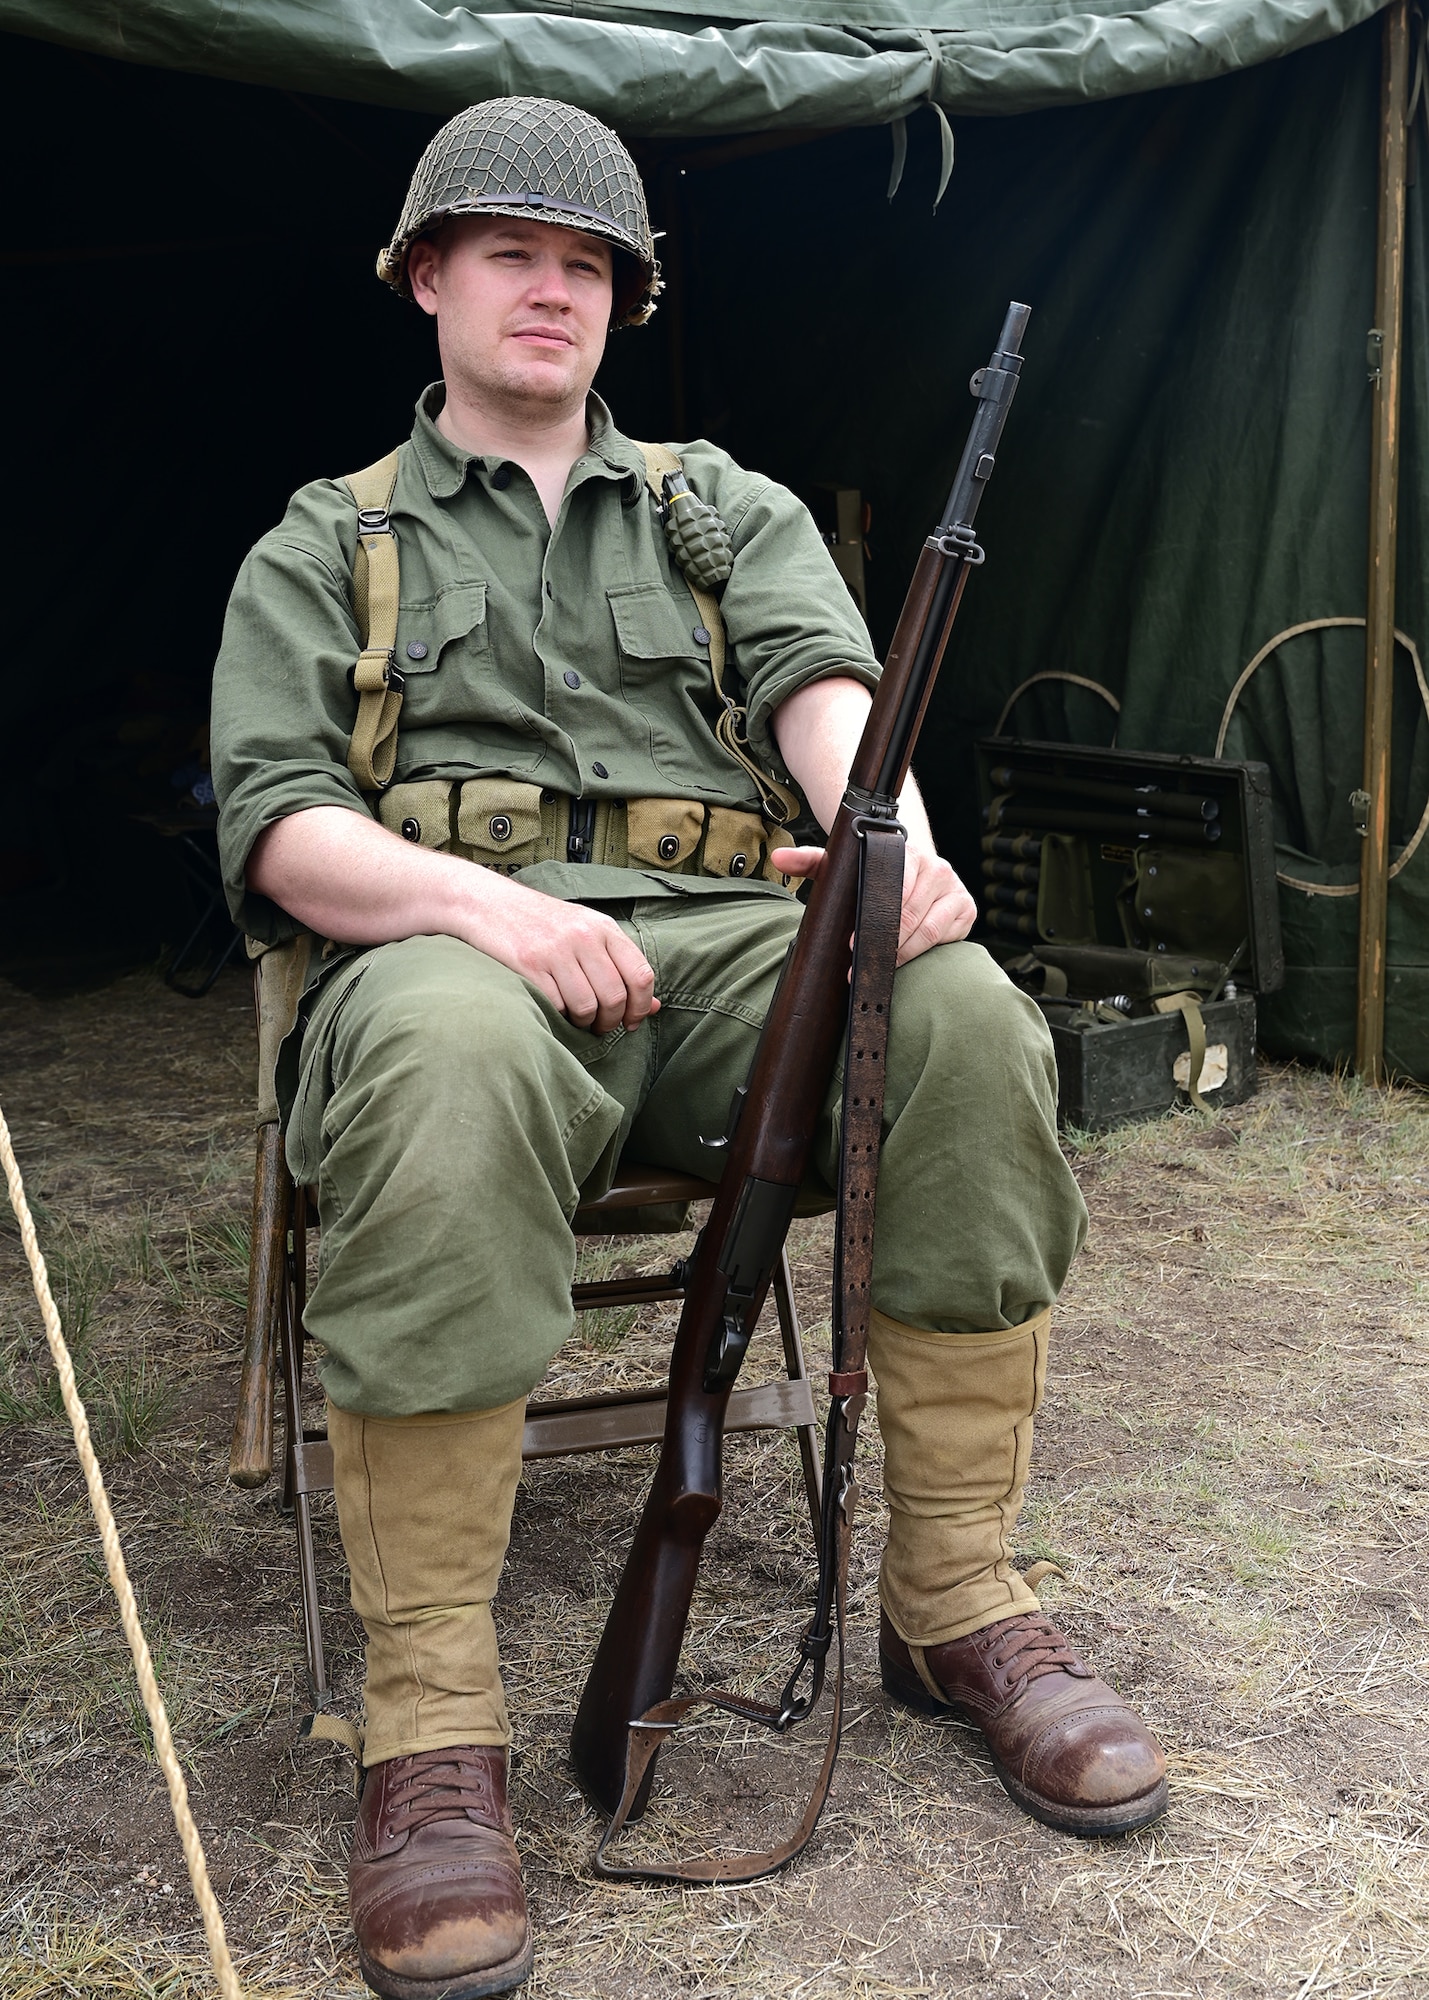 World War II paratrooper reenactor posing